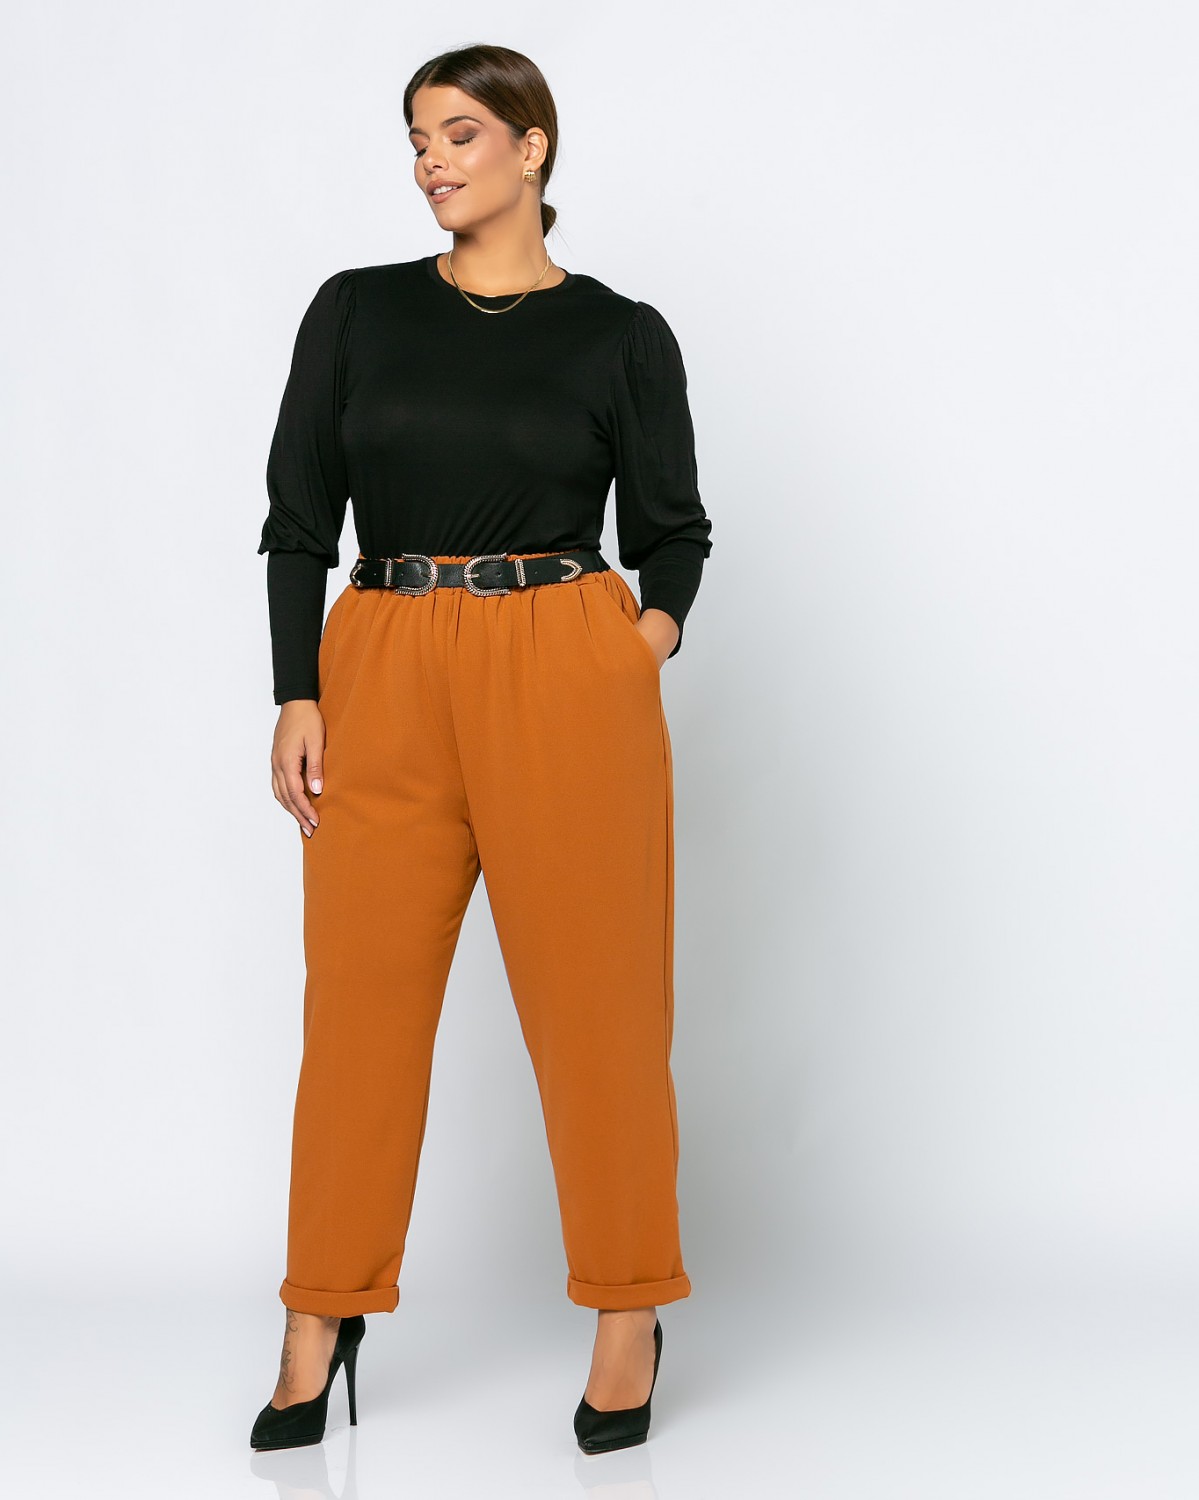 Spodnie z krepy, kolor Orange Brown